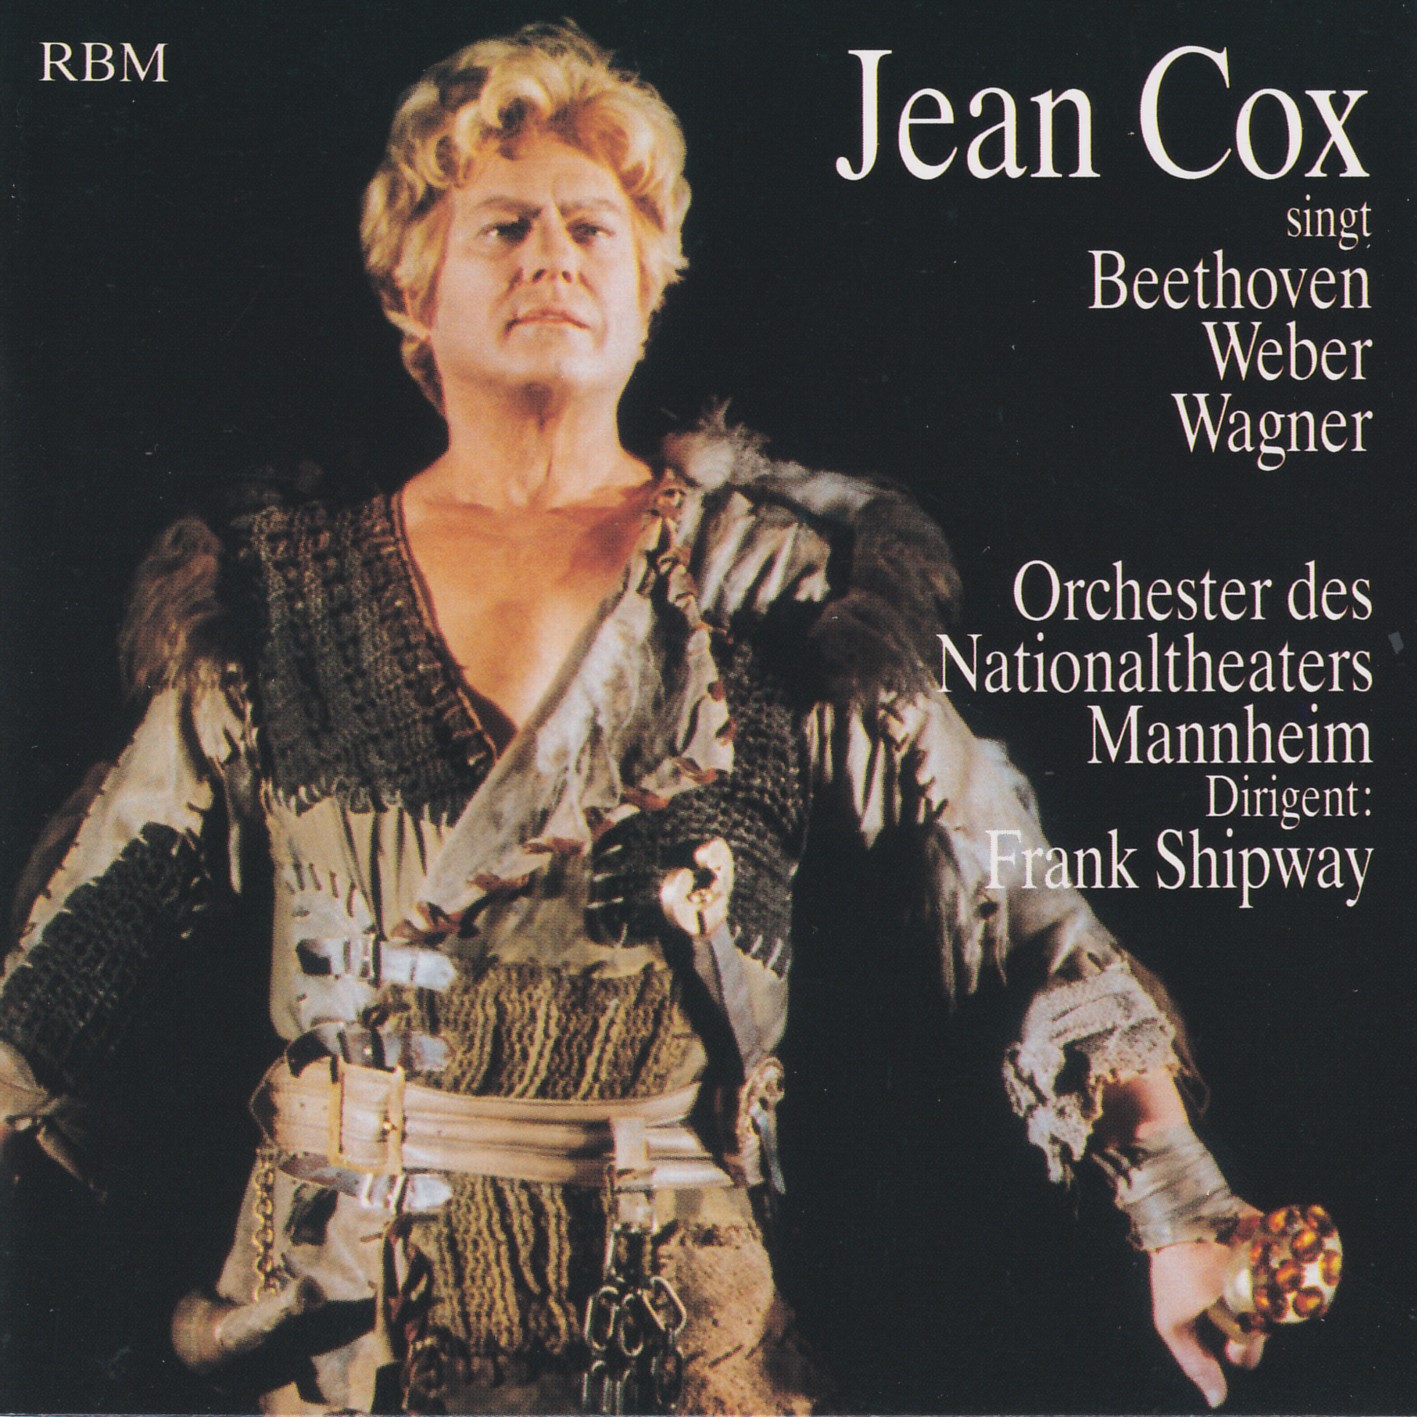 Jean Cox singt Beethoven, Weber, Wagner